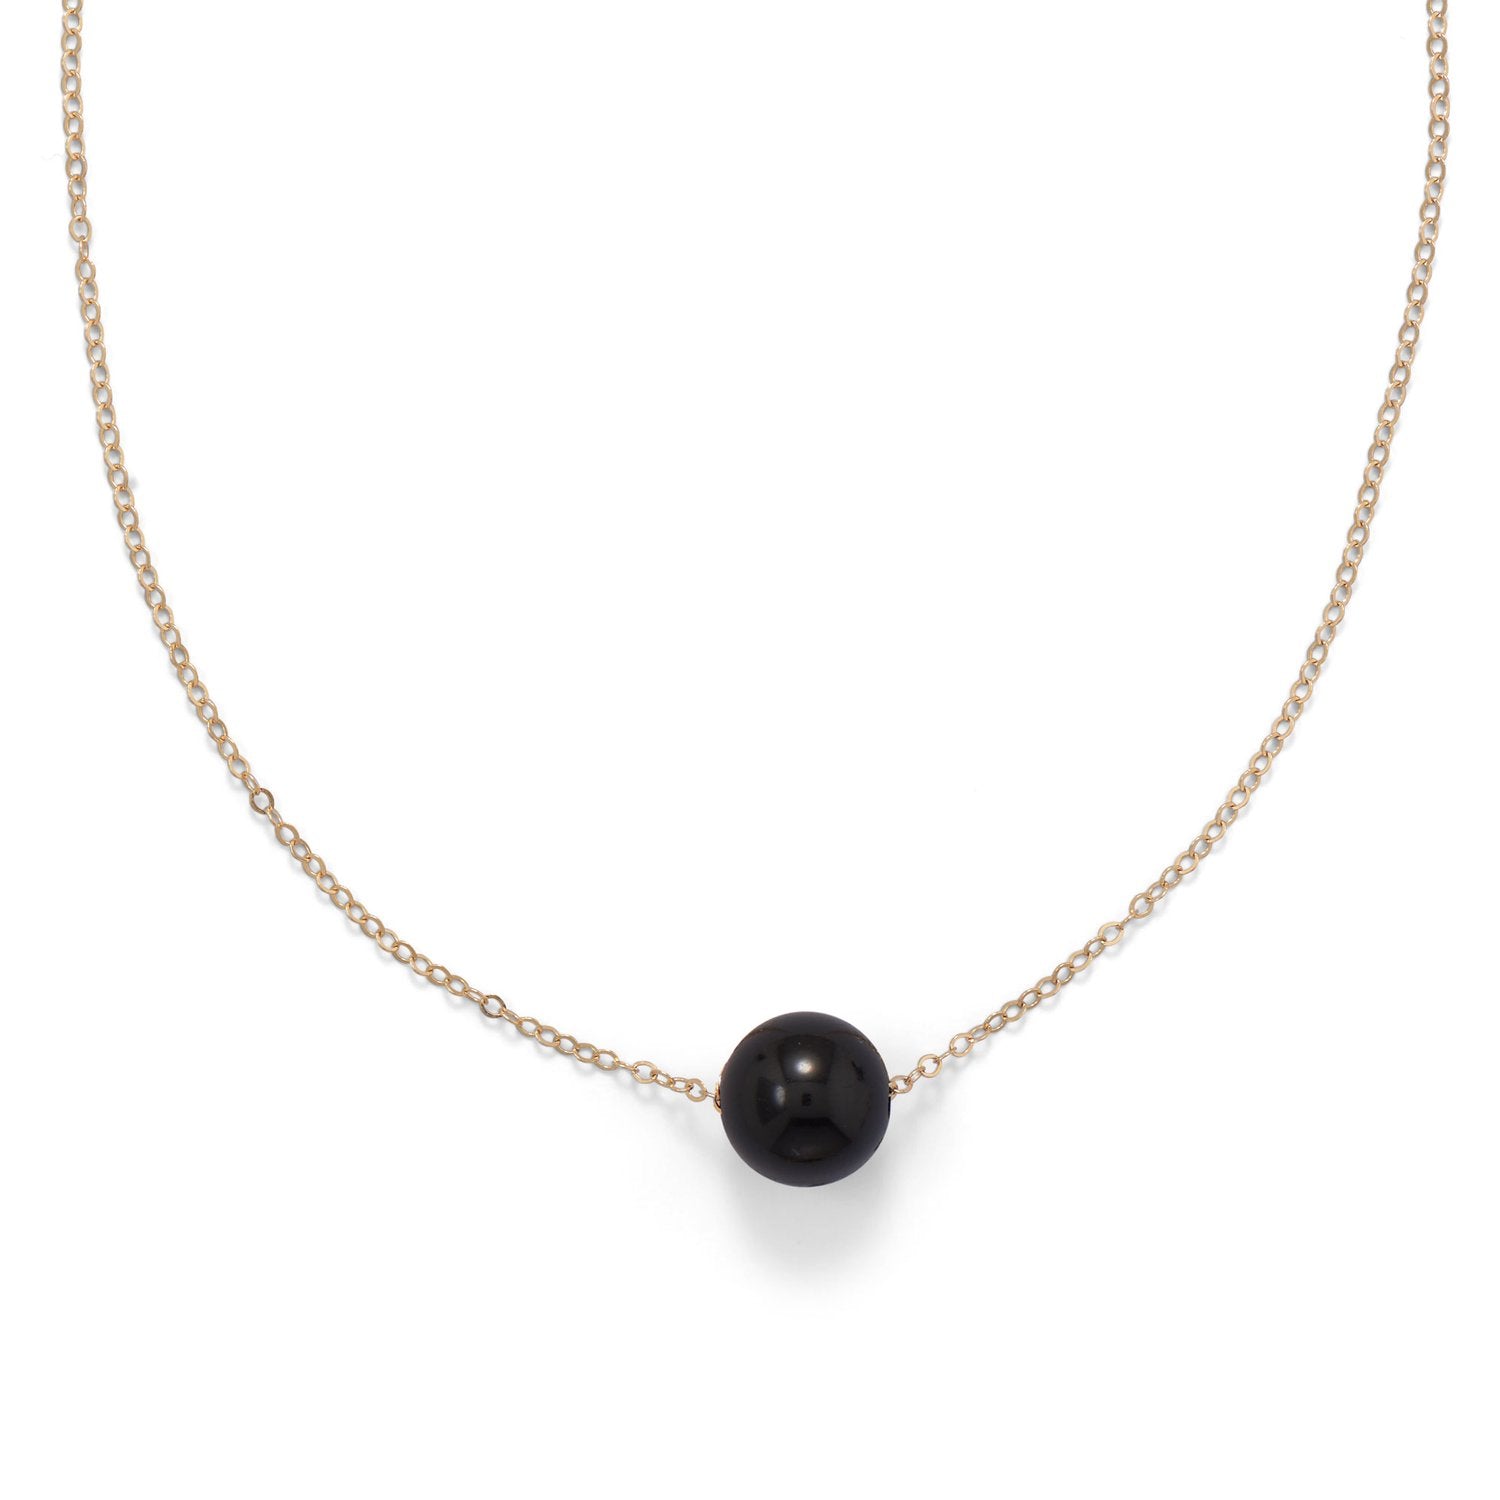 16" + 2" Gold Filled Black Onyx Necklace - Joyeria Lady